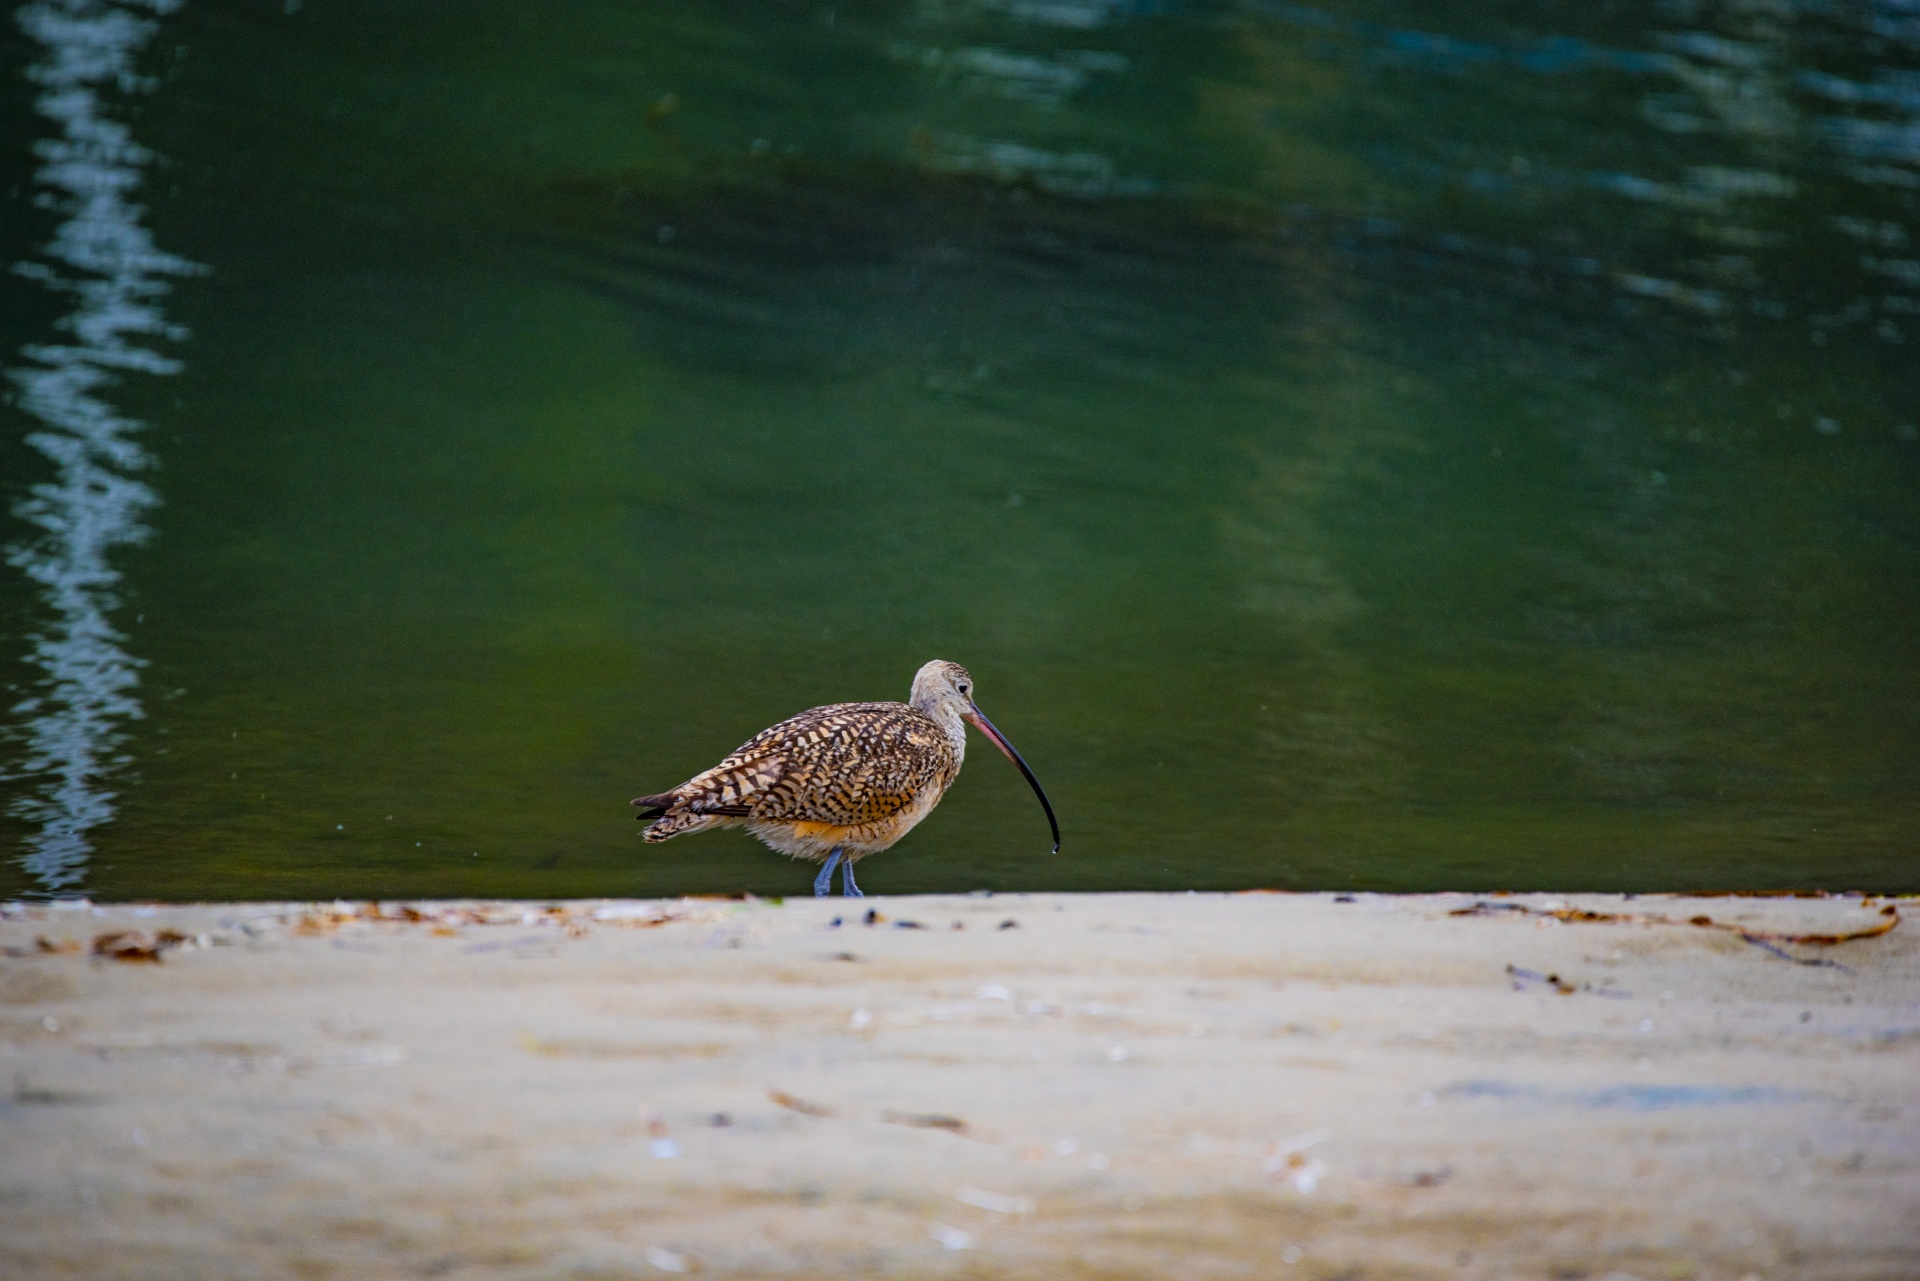 Brachvogel am Wasserrand